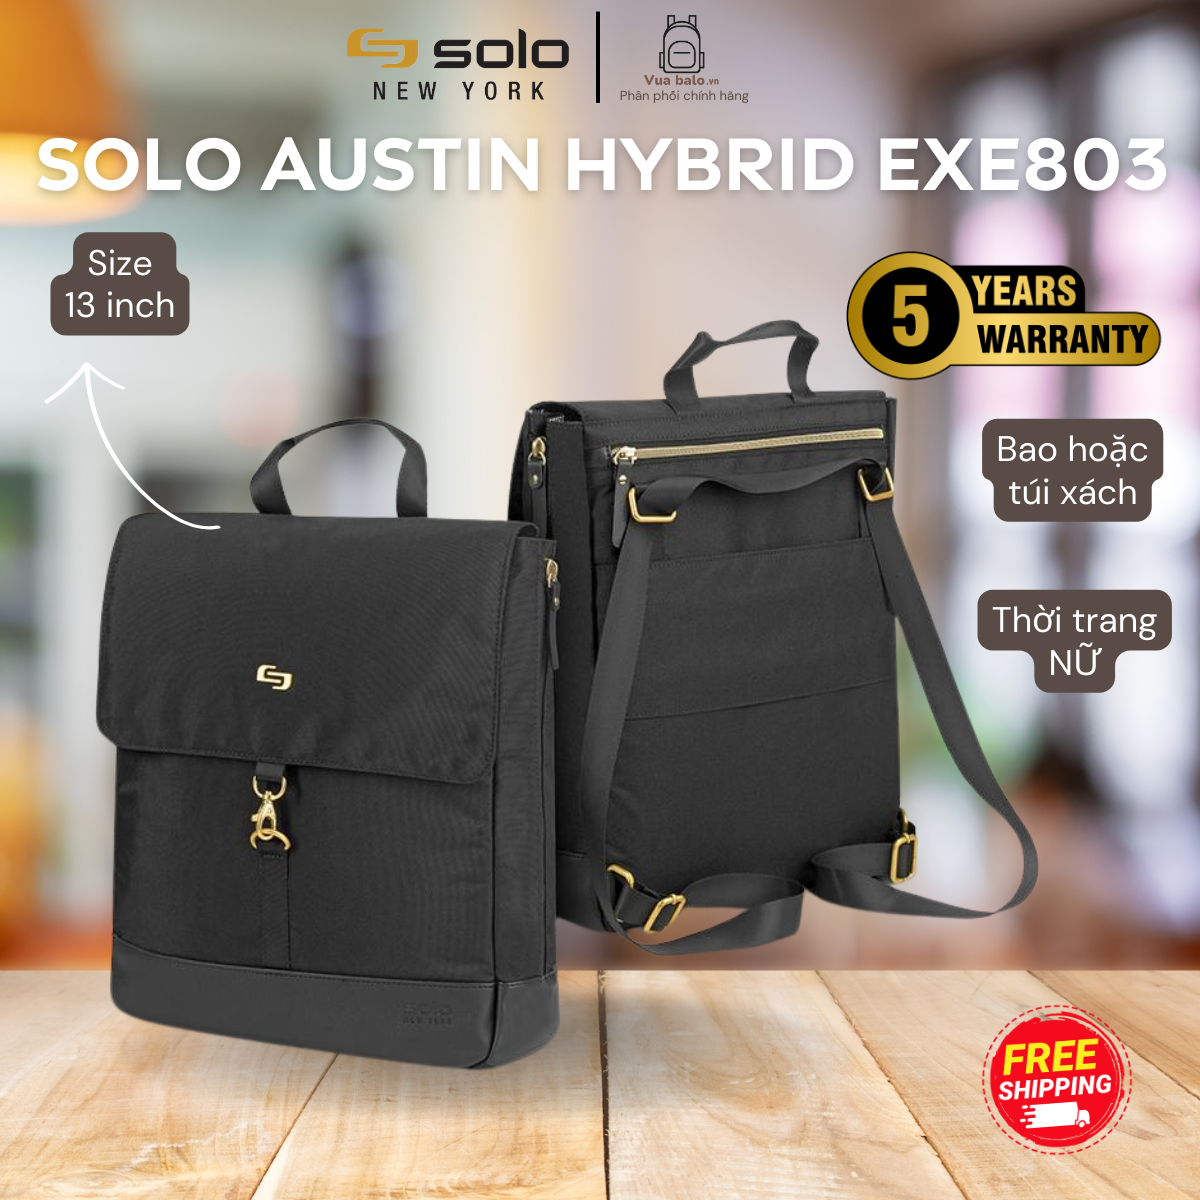 Balo Nữ SOLO Austin Hybrid Tote Ngăn laptop 13.3 inch màu đen phối phụ kiện mạ vàng Mã EXE803 Bảo hành 5 năm chính hãng